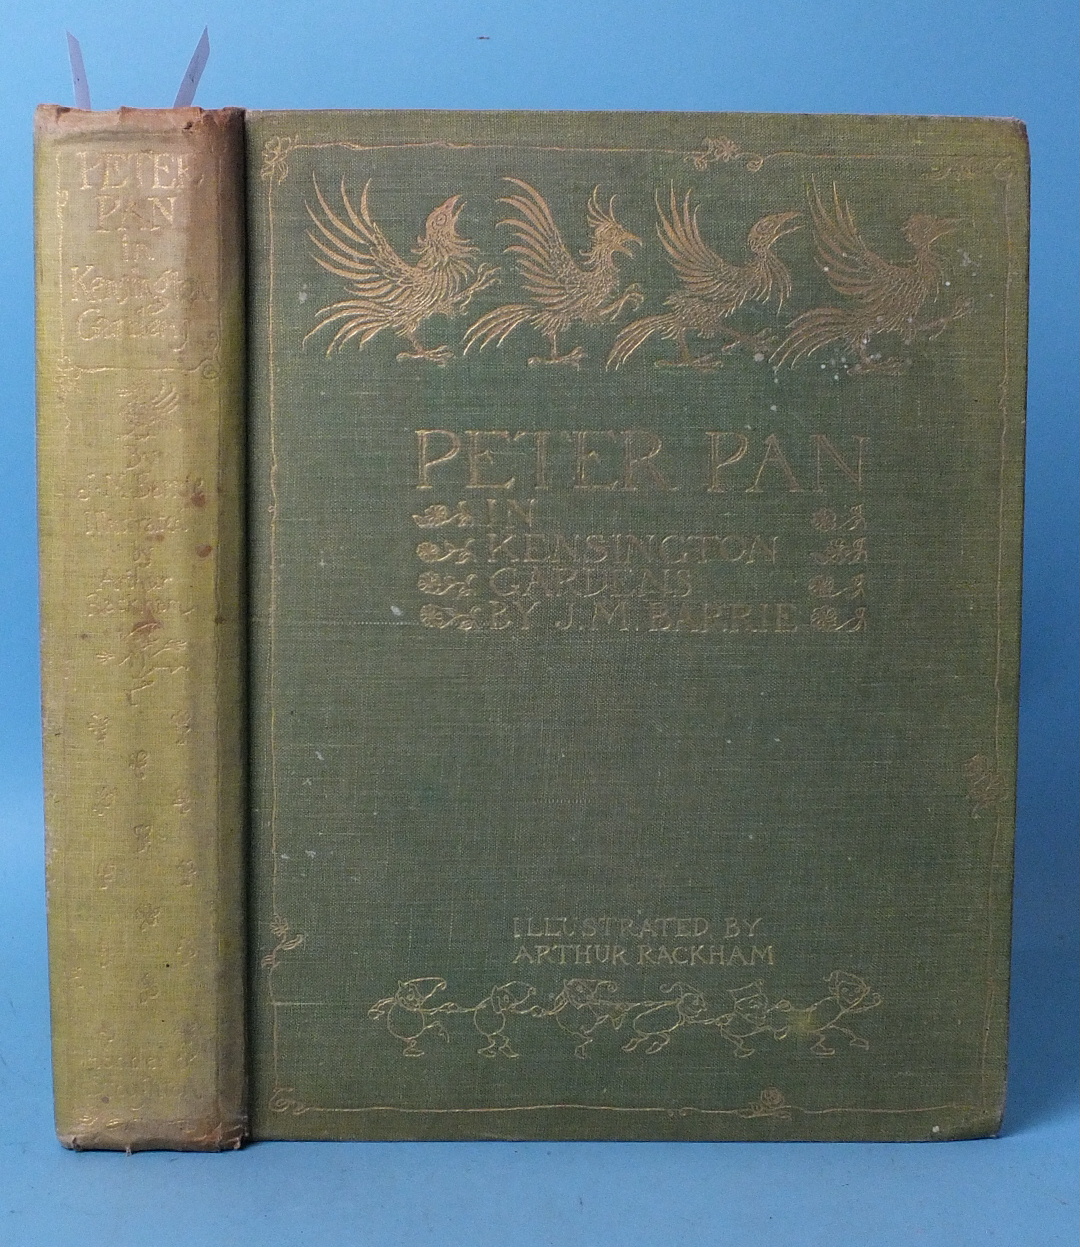 Rackham (Arthur, illustrator), Peter Pan in Kensington Gardens, by J M Barrie (From the Little White